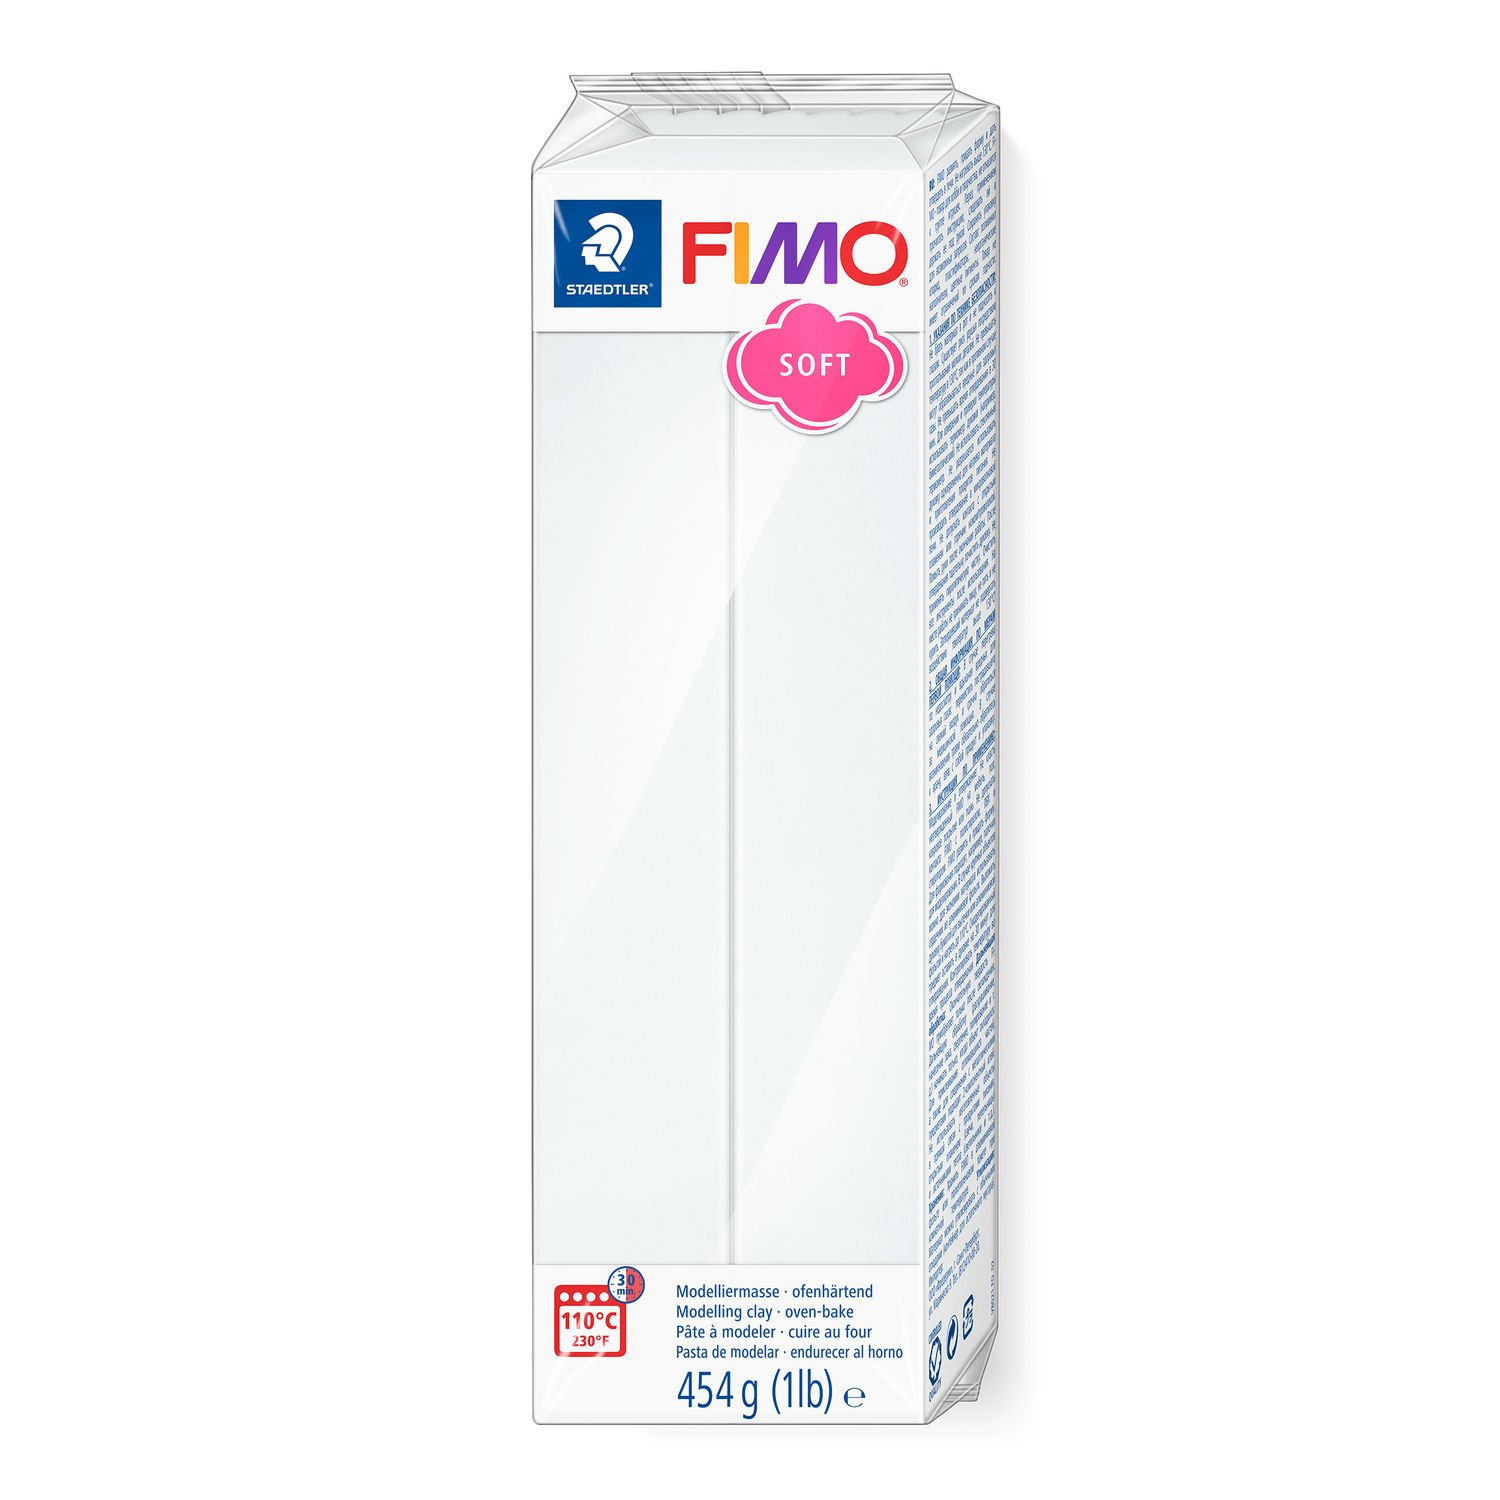 STAEDTLER FIMO 8021 - Modellierton - Weiß - 1 Stück(e) - 1 Farben - 110 °C - 30 min